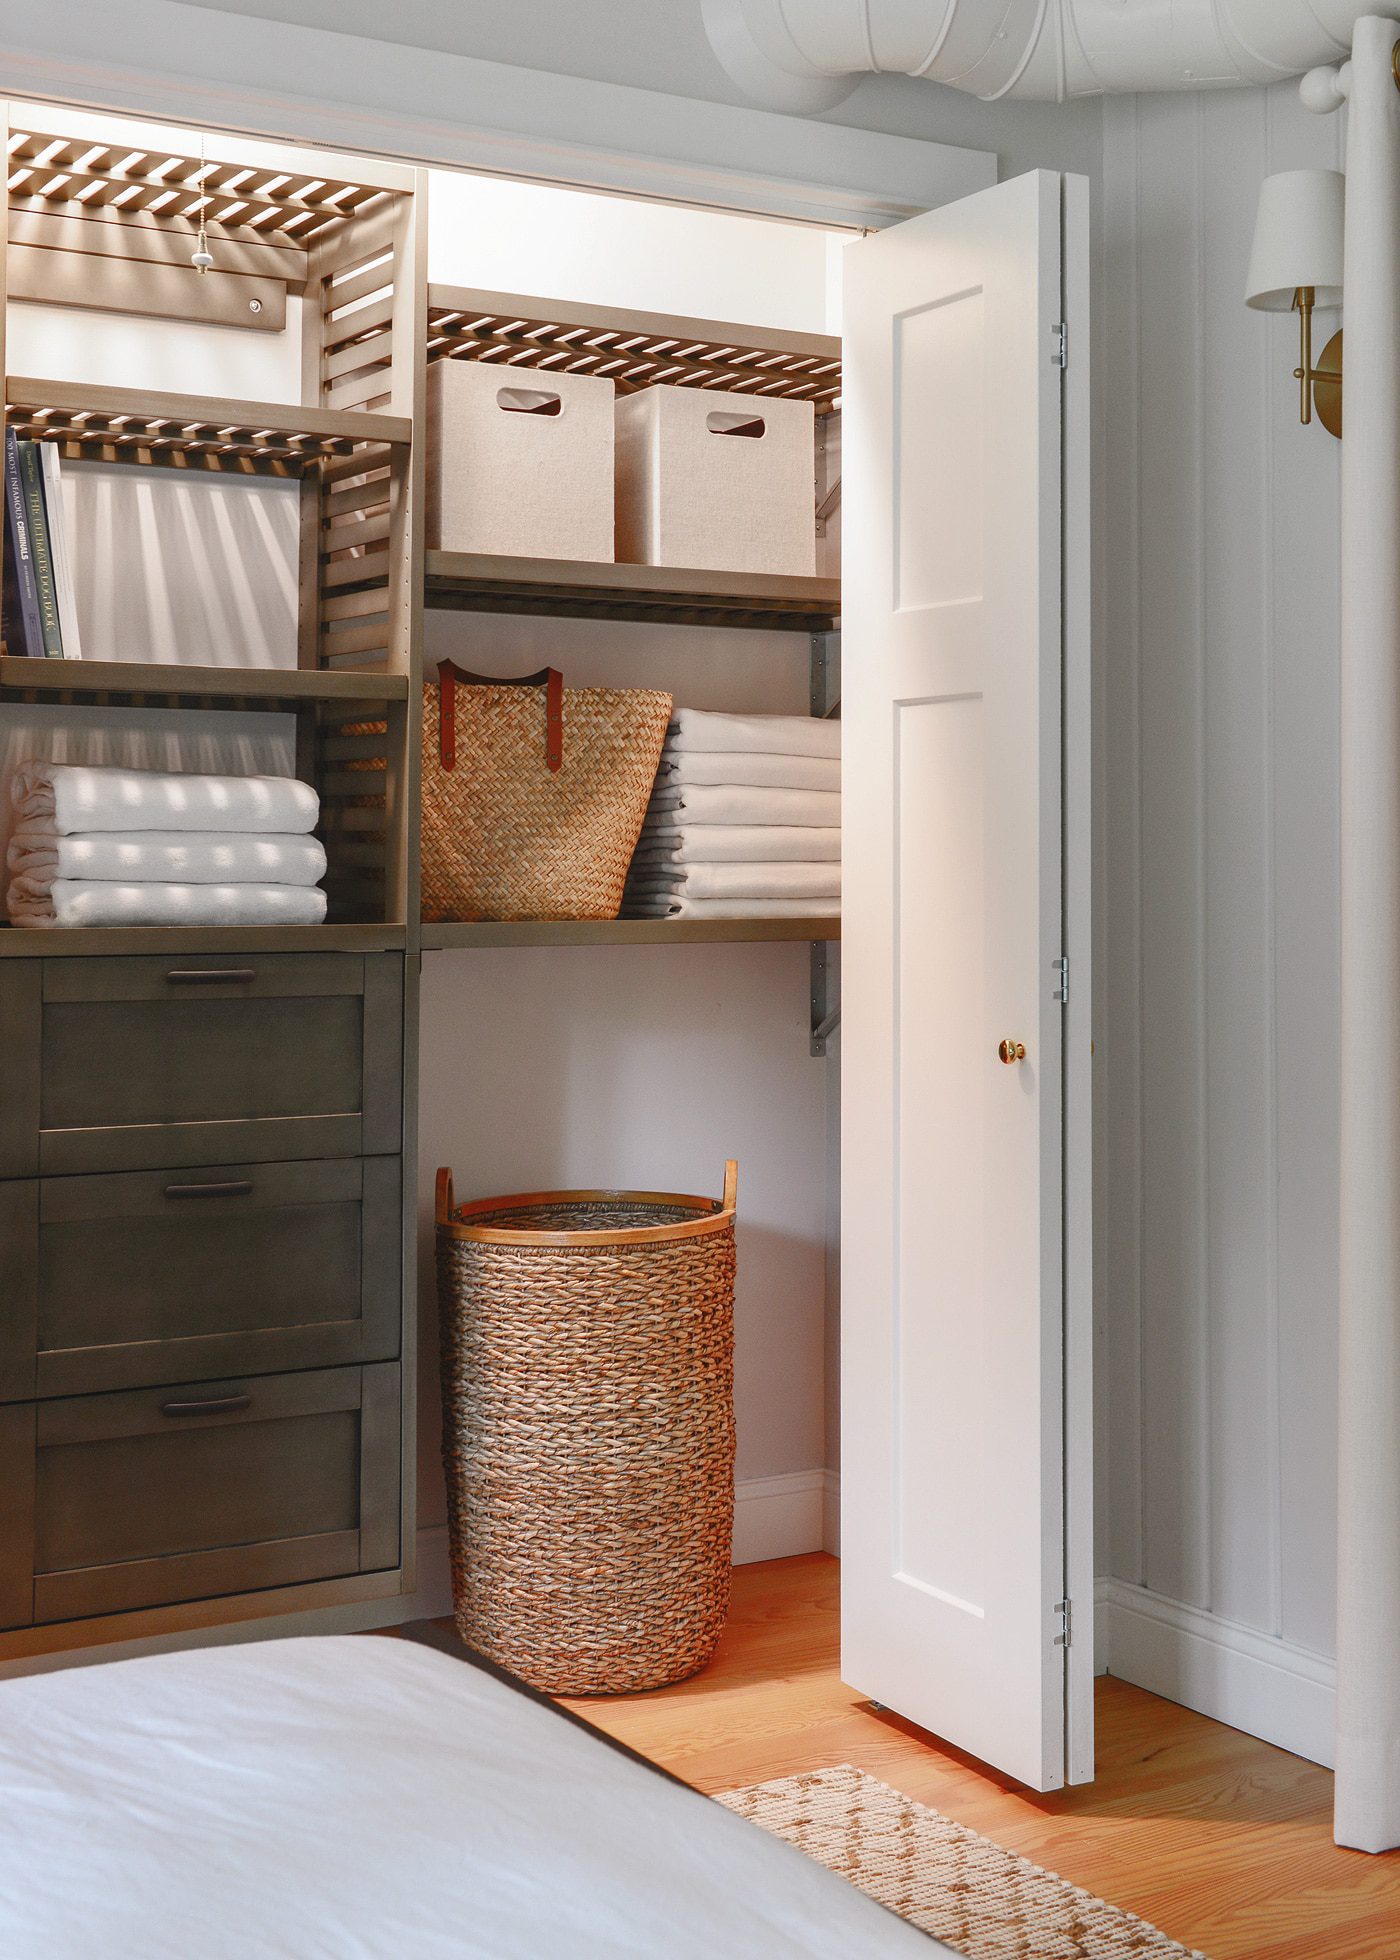 How to organize your closet using a closet kit | via Yellow Brick Home